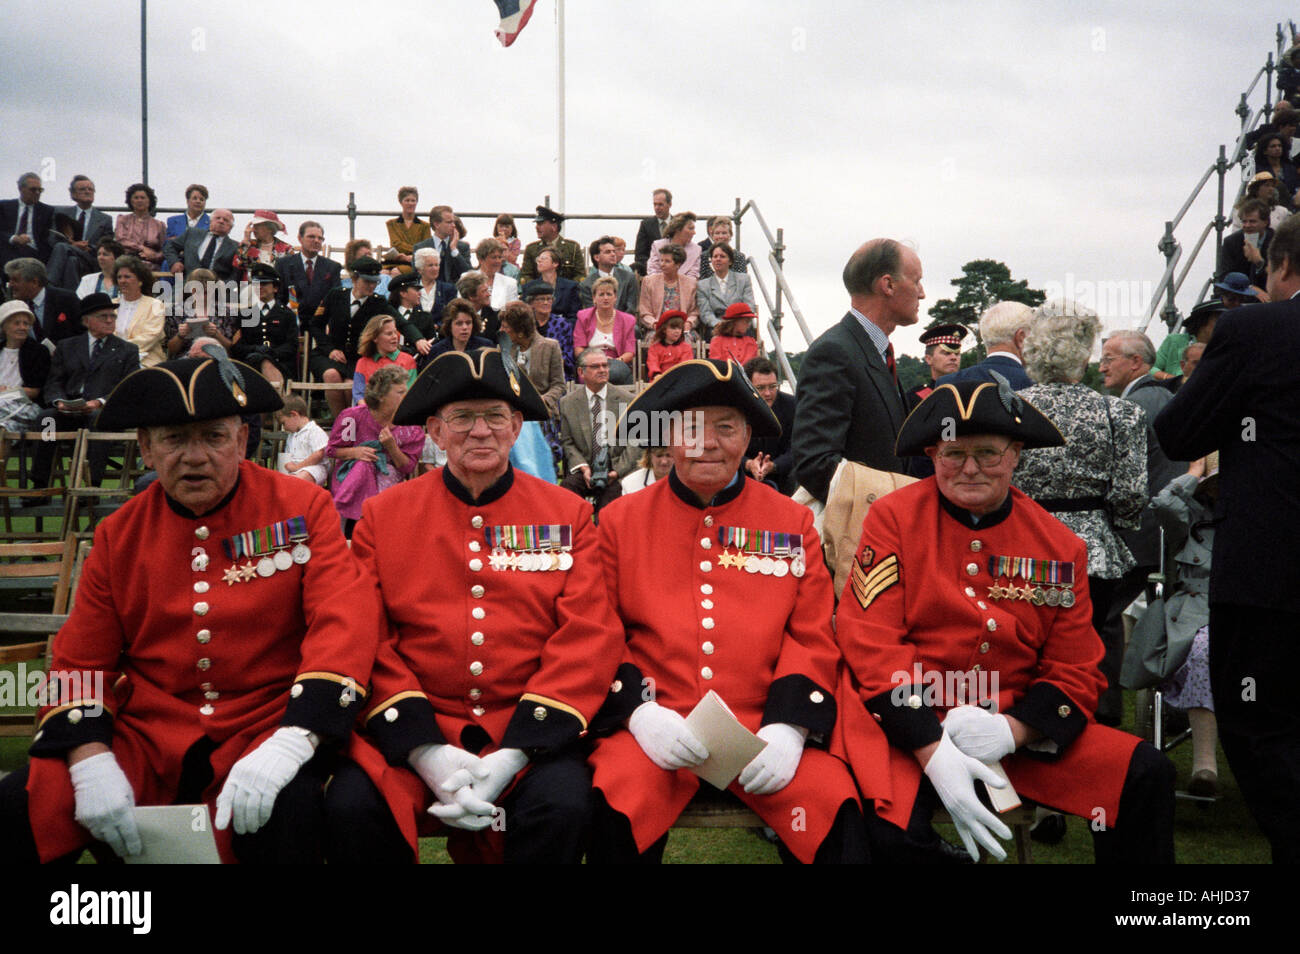 Vier Chelsea Rentner in voller zeremonieller Uniform vor der Menge bei einer feierlichen Veranstaltung in der Royal Military Academy Sandhurst. Sandhurst, Großbritannien. Stockfoto